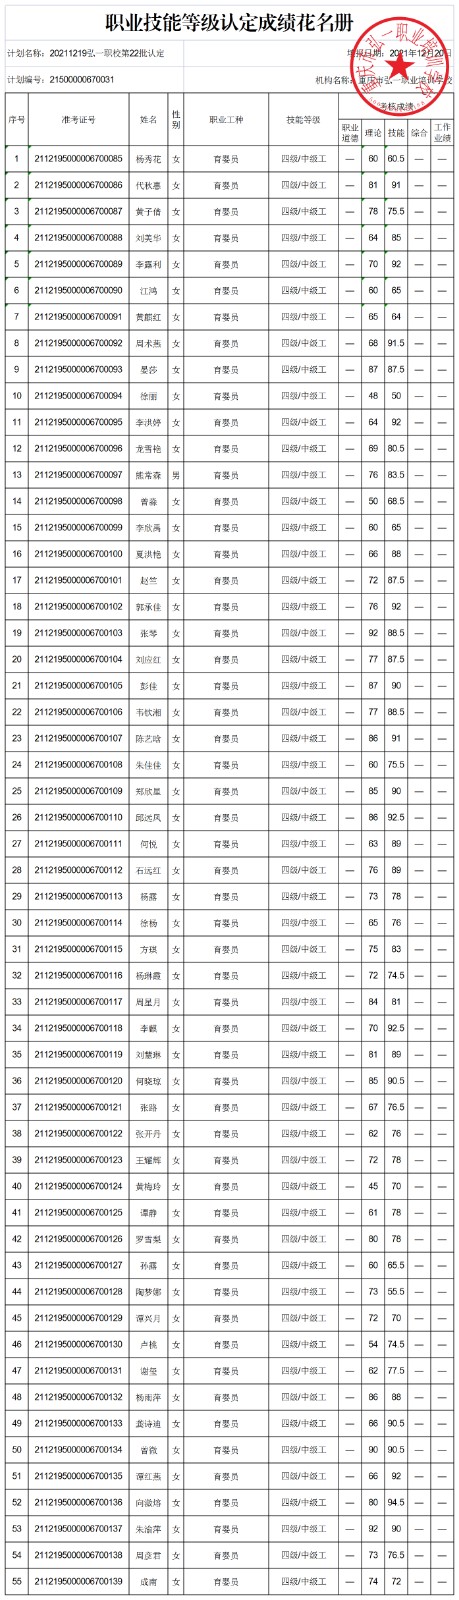 20211219弘一职校第22批认定技能等级认定人员成绩花名册(公示表).JPG